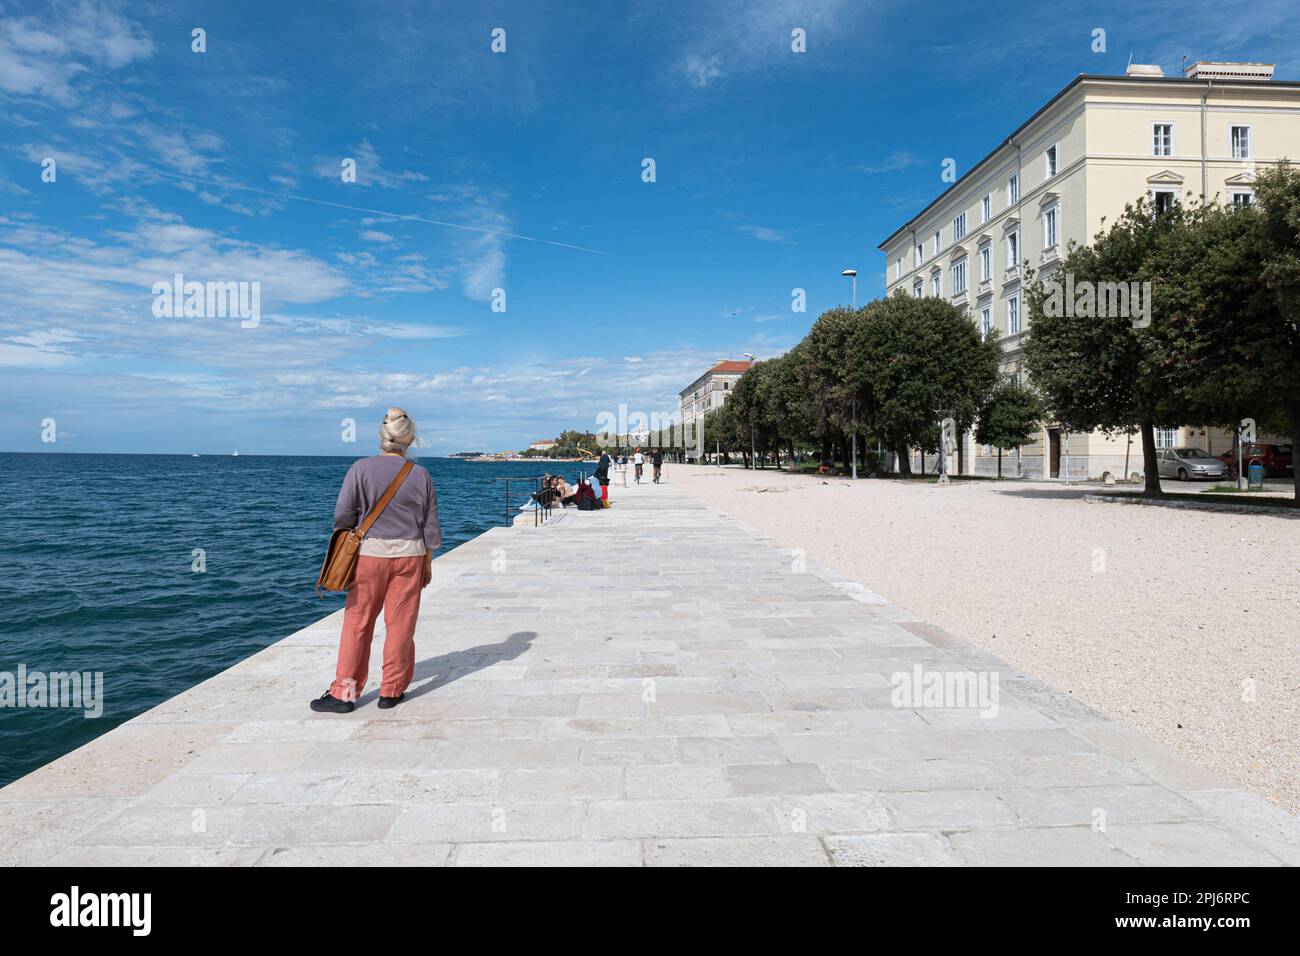 Zadar est une ville côtière située en Croatie, connue pour son riche patrimoine culturel et historique. L'une des principales attractions de la ville Stock Photo